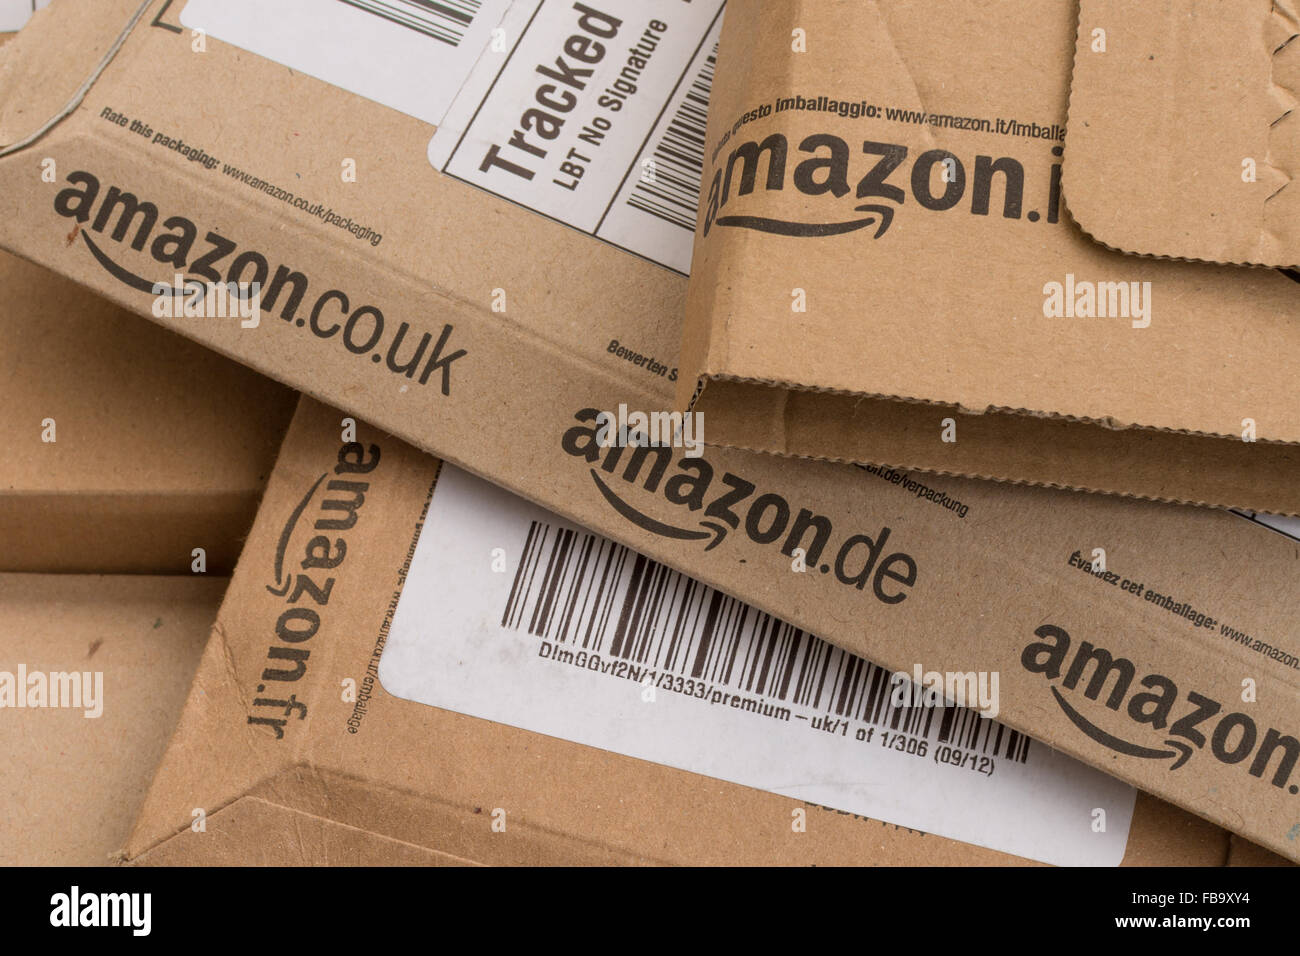 Amazon boxes parcels Stock Photo